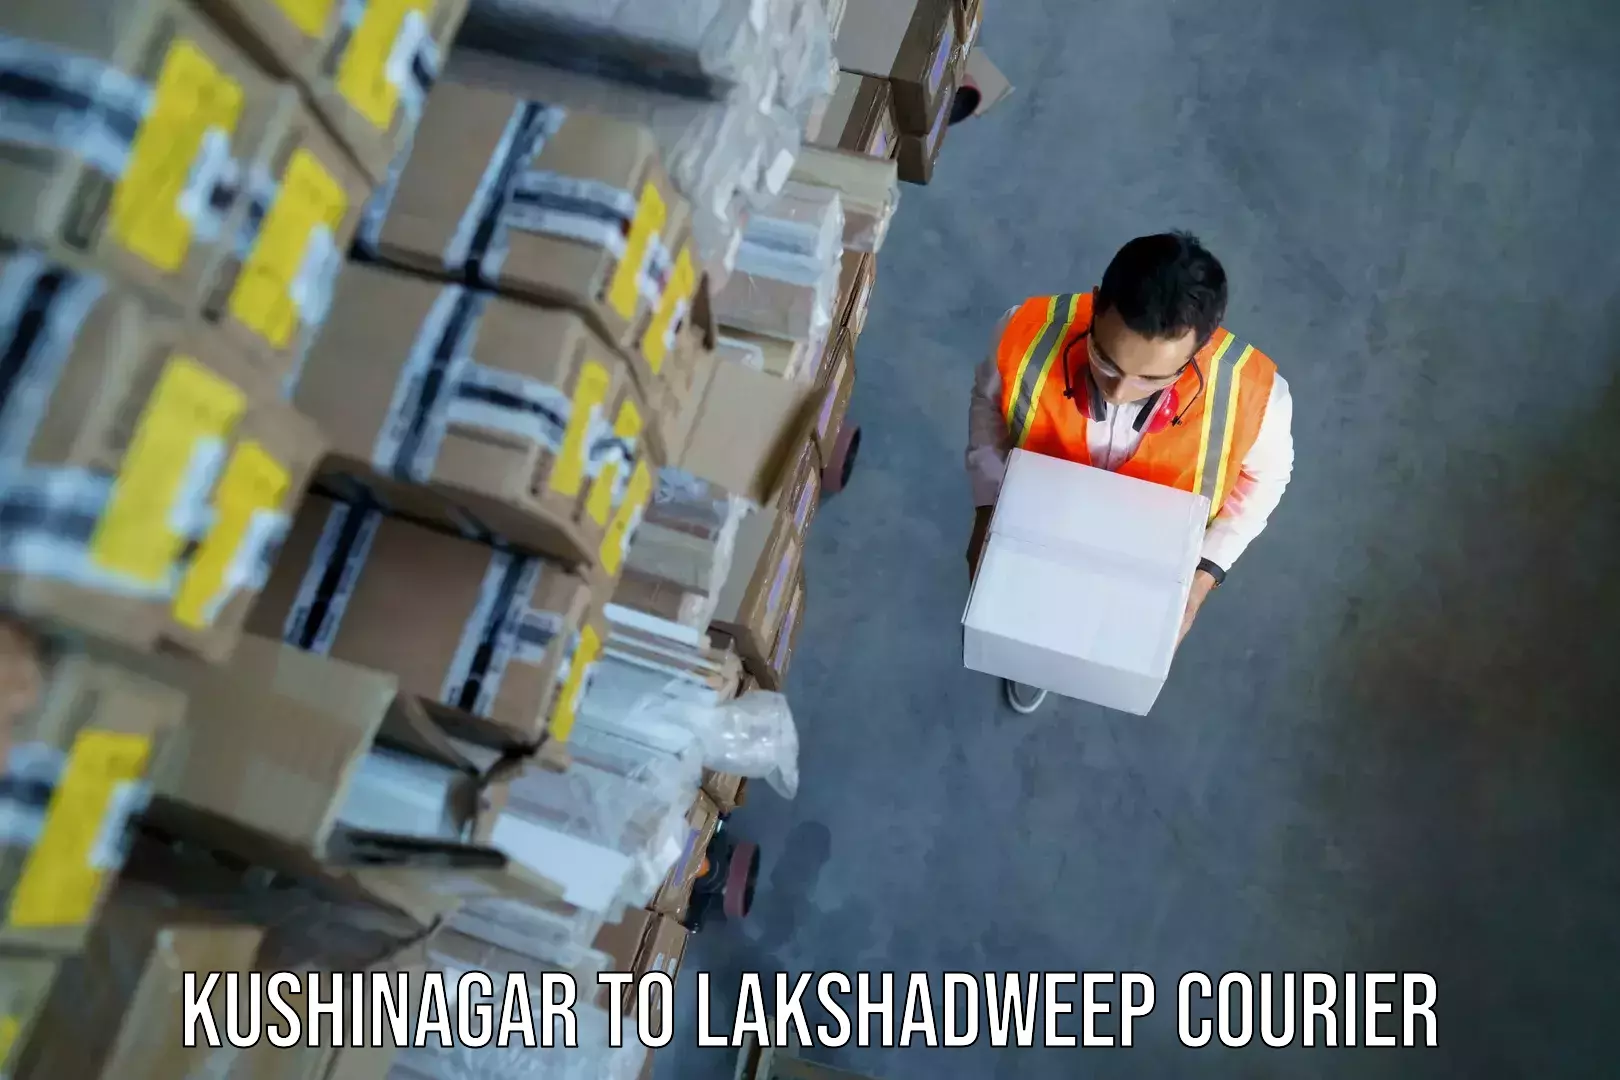 Baggage shipping service Kushinagar to Lakshadweep